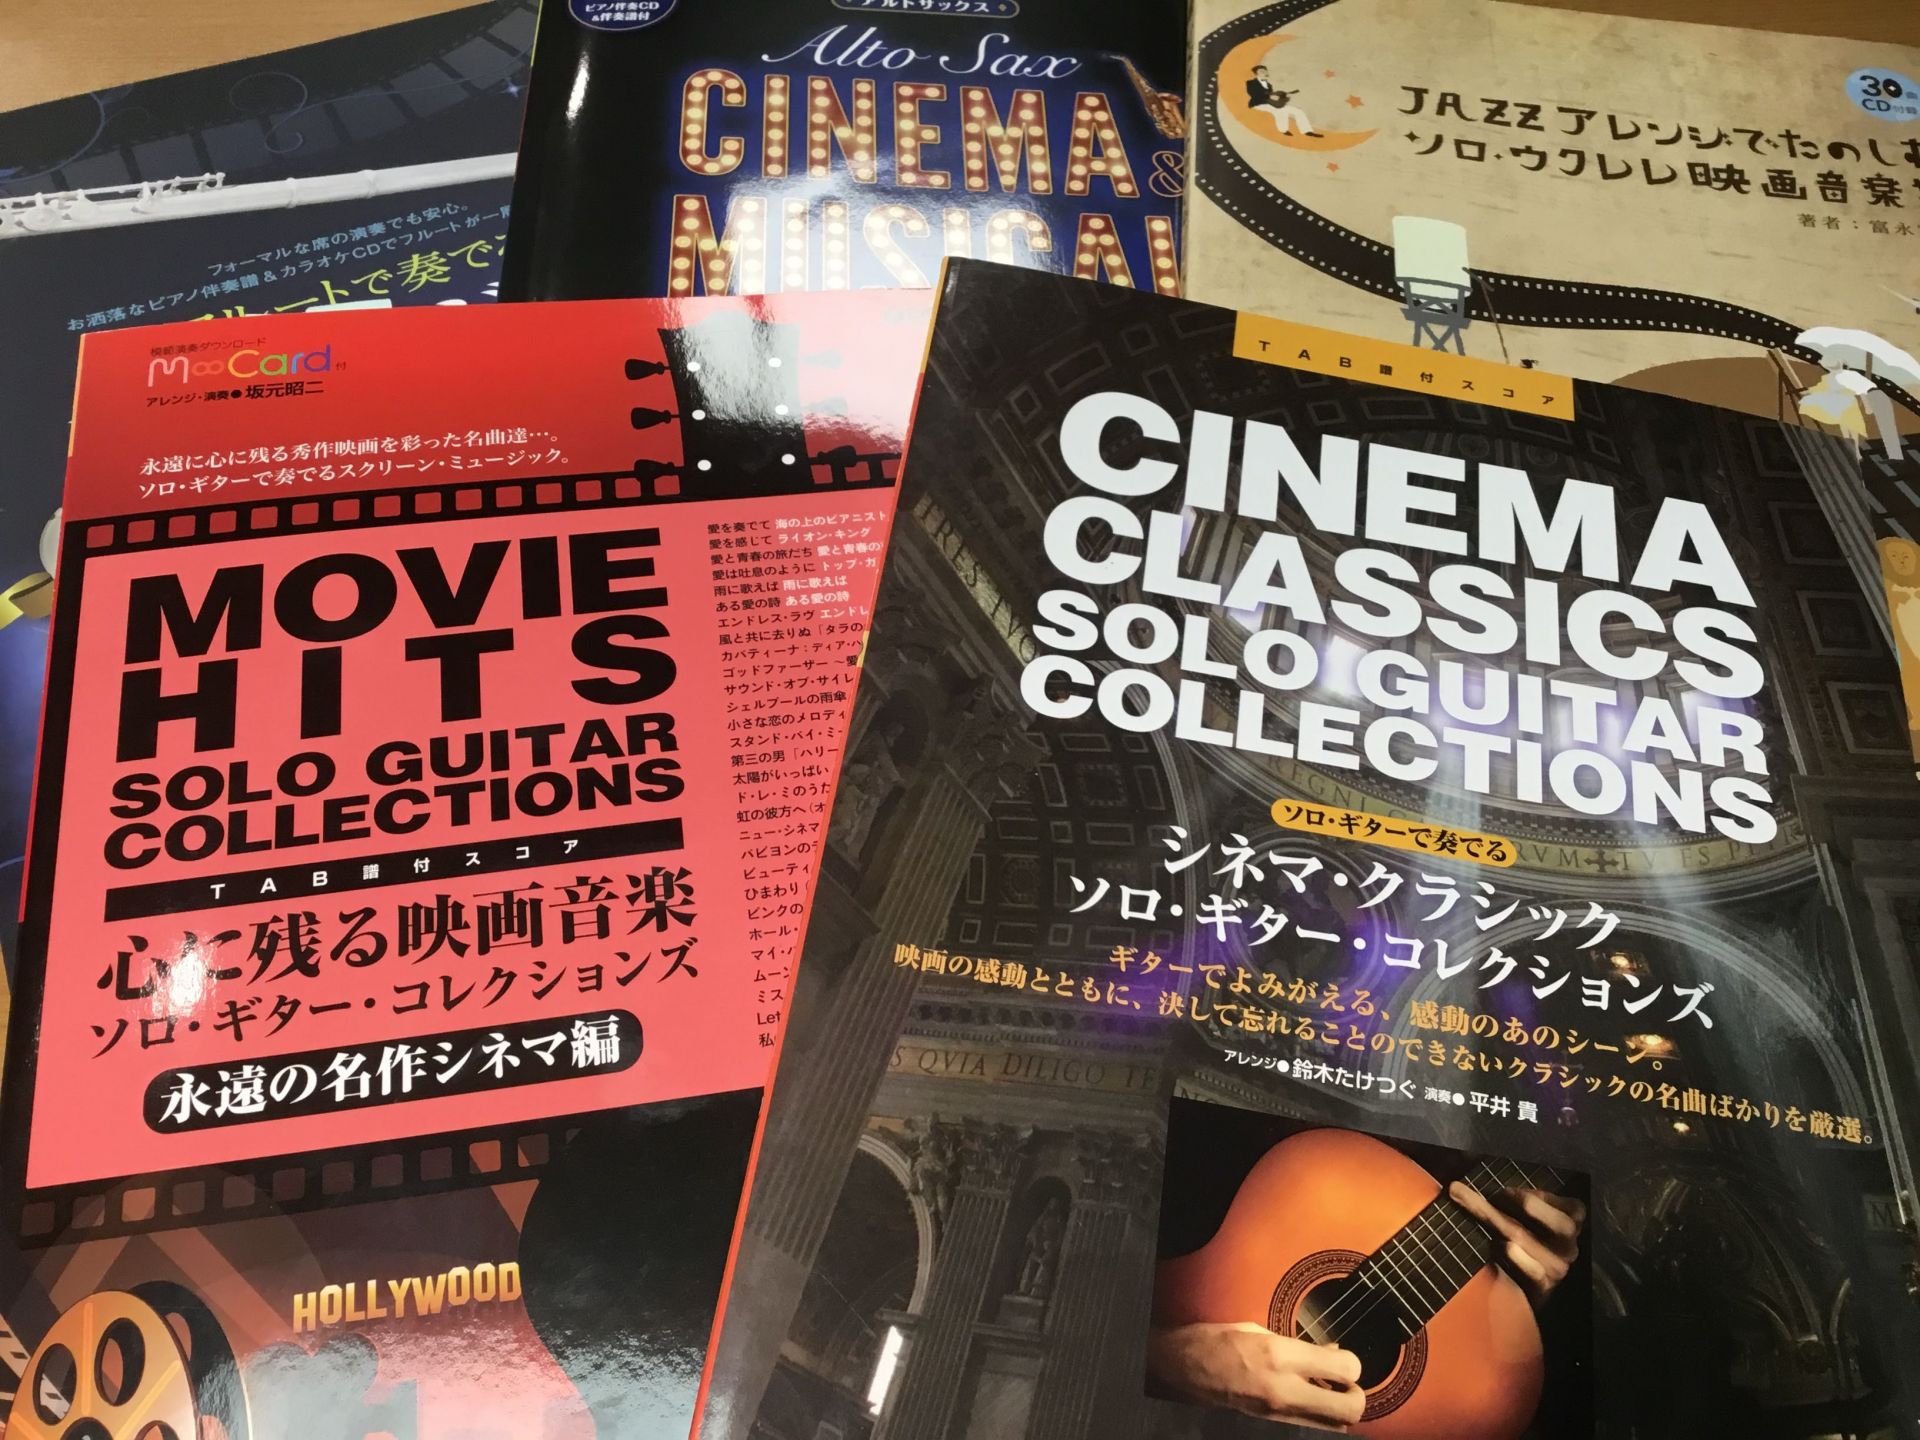 *あの想い出の名作映画のサウンドを、あなたの手で奏でてみませんか？ 日本で最初に映画が上映されたのが1896年12月の大阪での試写だそうです(参照元：wikipedia) およそ120年も前に誕生した映画は、それから1世紀以上もその時代の人々に愛され続け、今では全国各地の映画館で鑑賞することができま […]